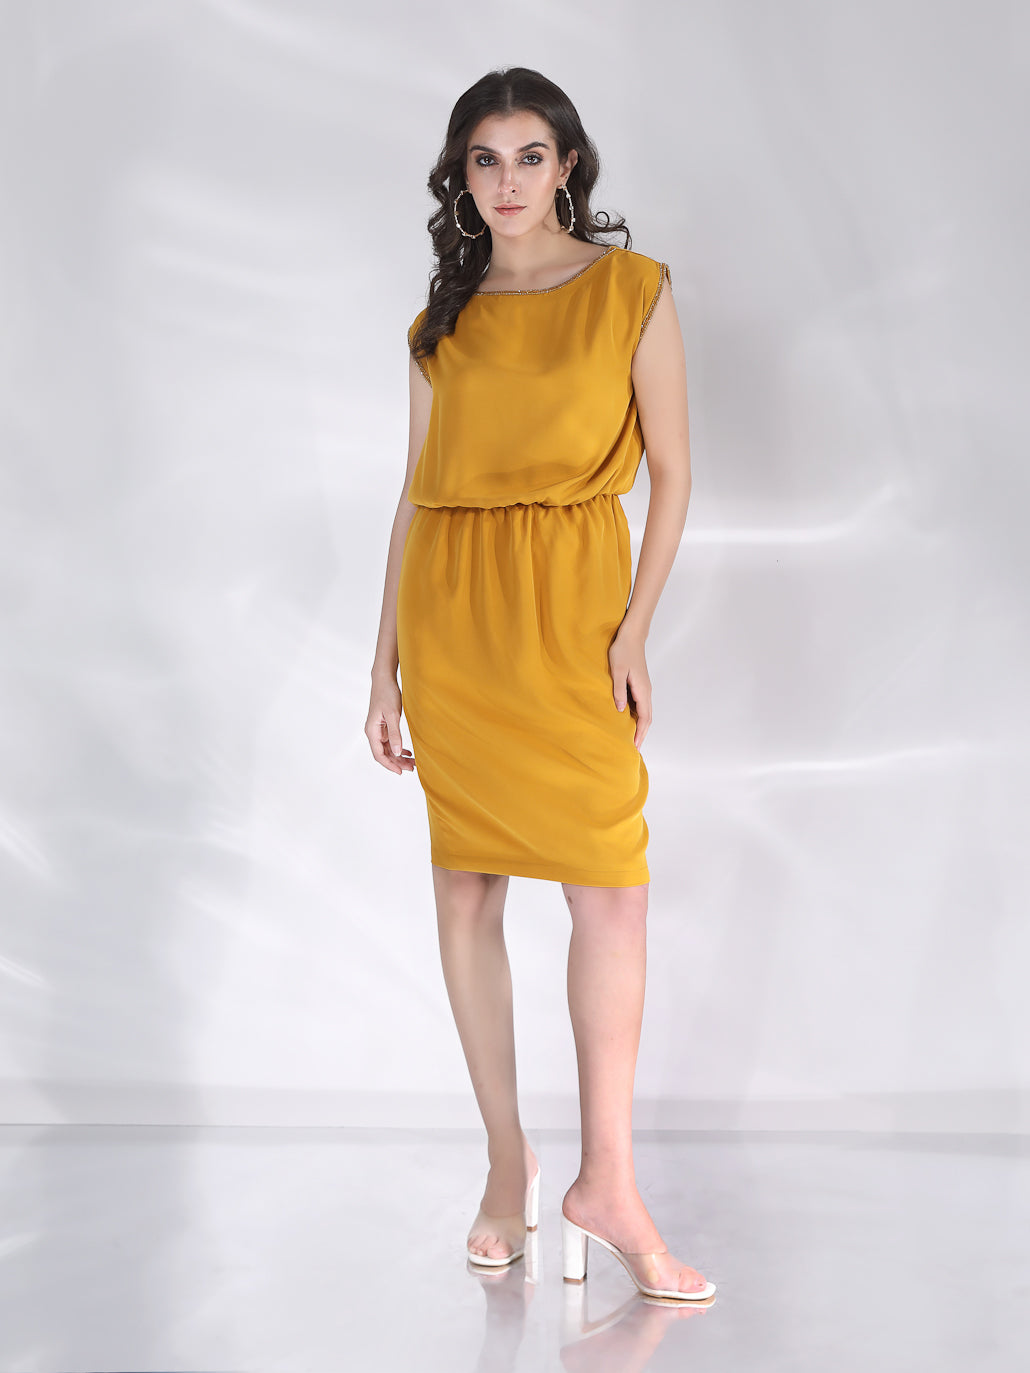 Adalee Mini Dress - Mustard